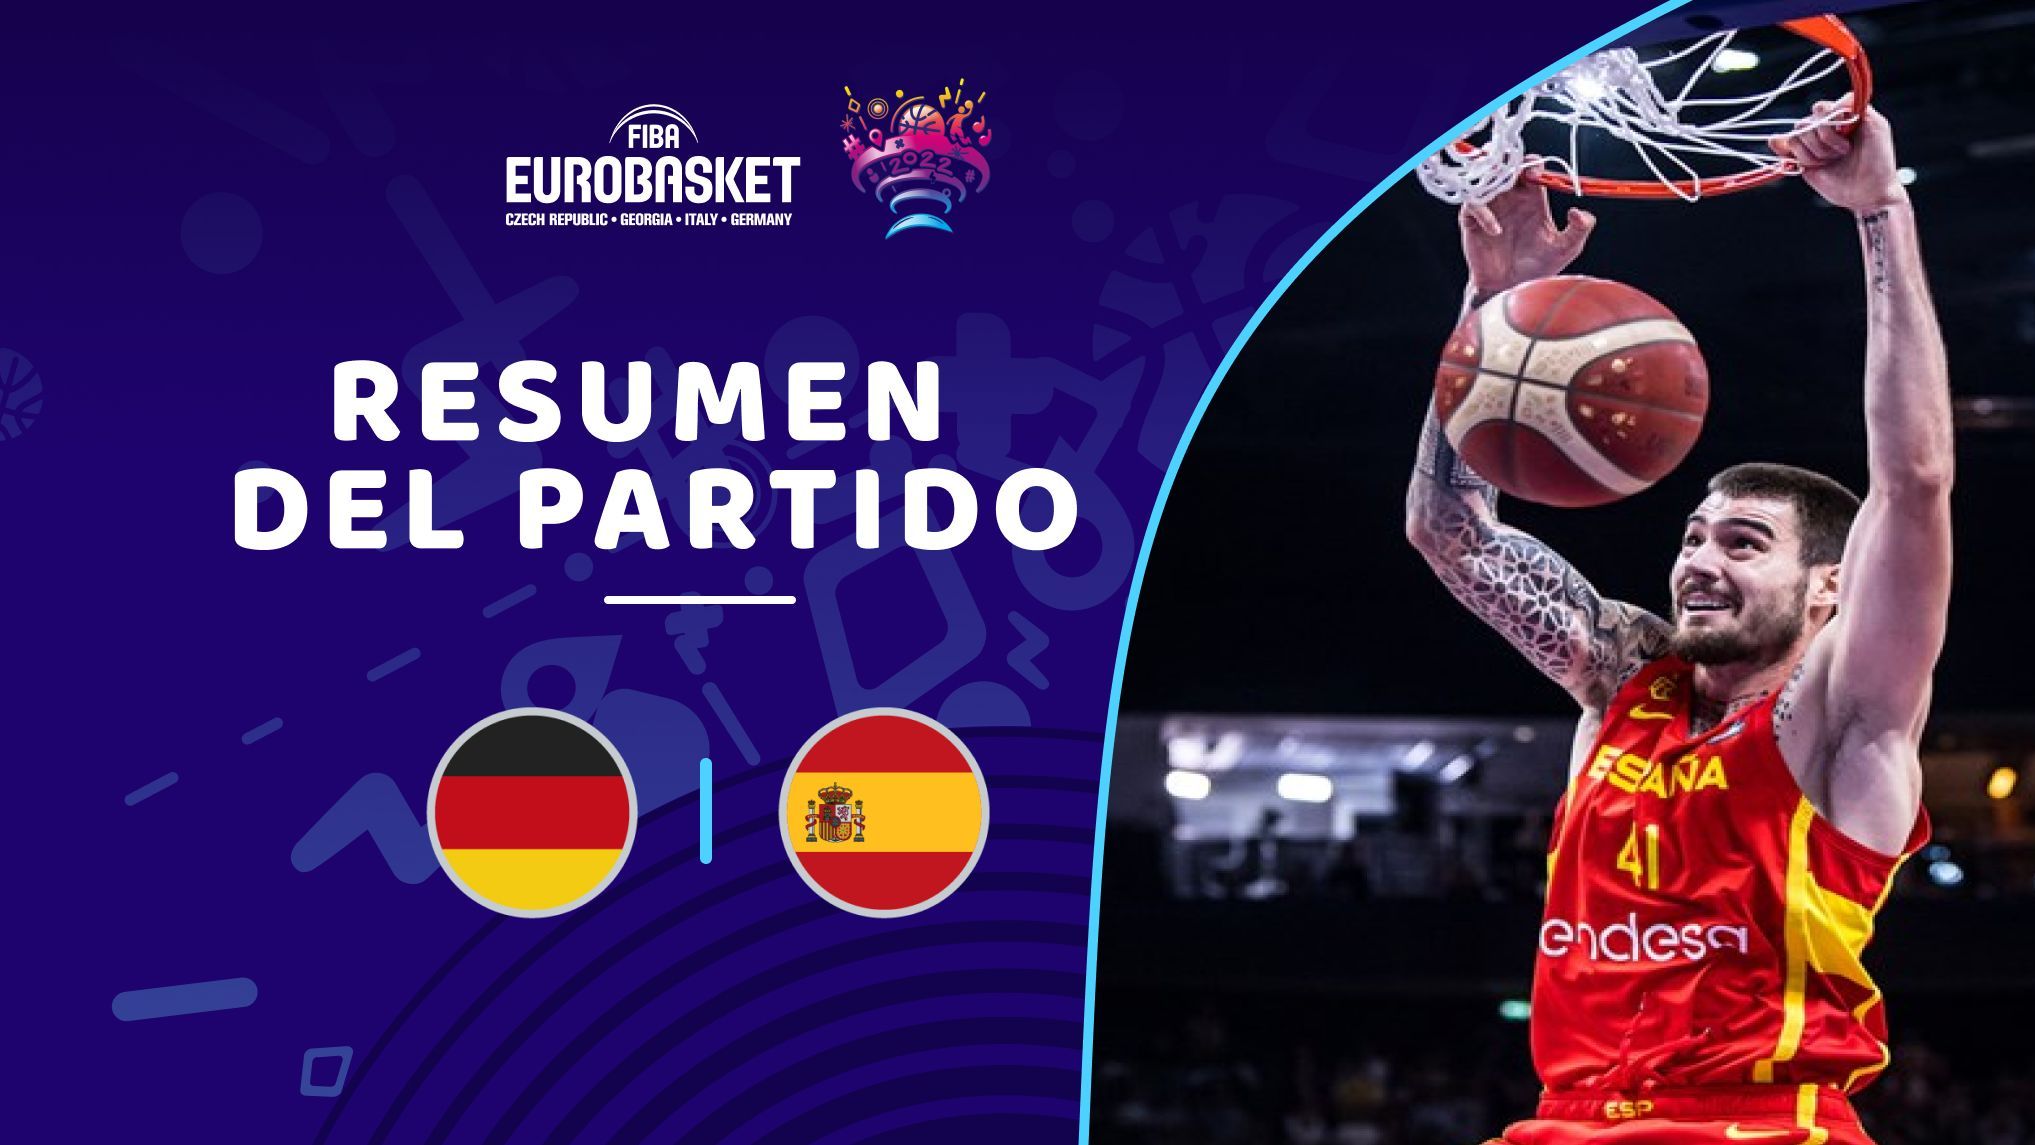 Restringido Meandro freír Eurobasket | Partidos en directo, clasificación, resultados y actualidad